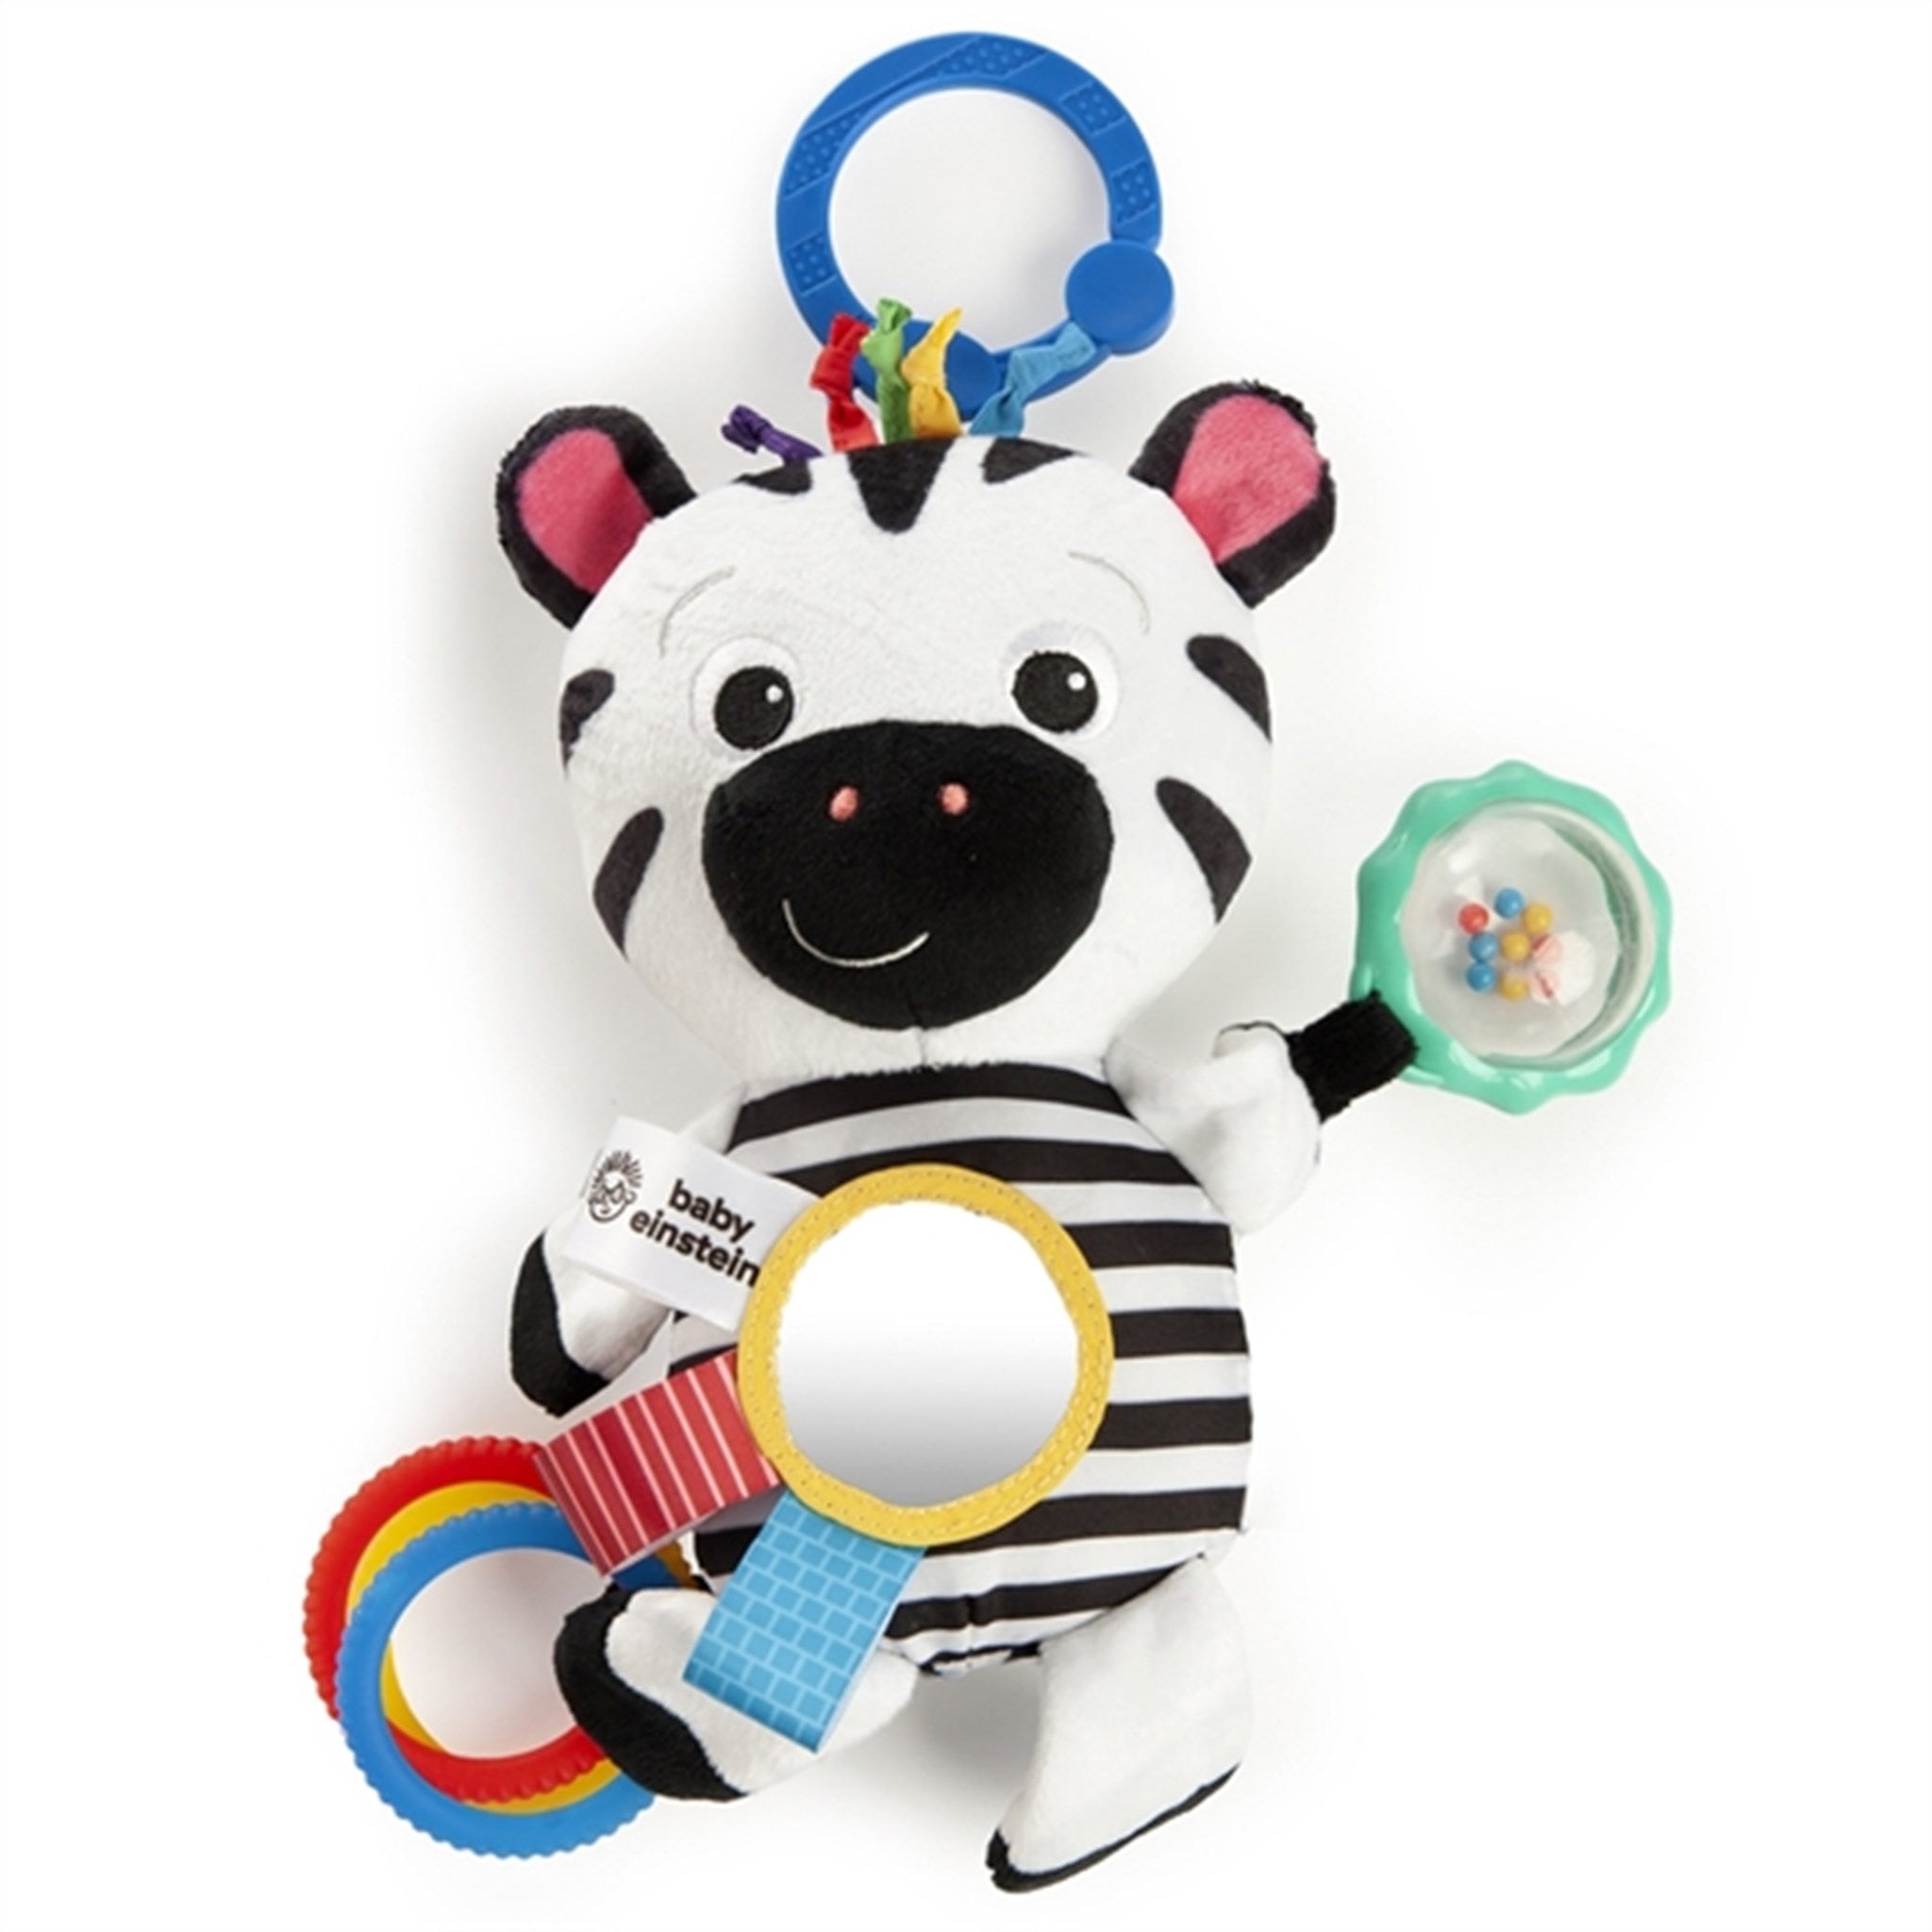 Baby Einstein Activity Toy - Zebra